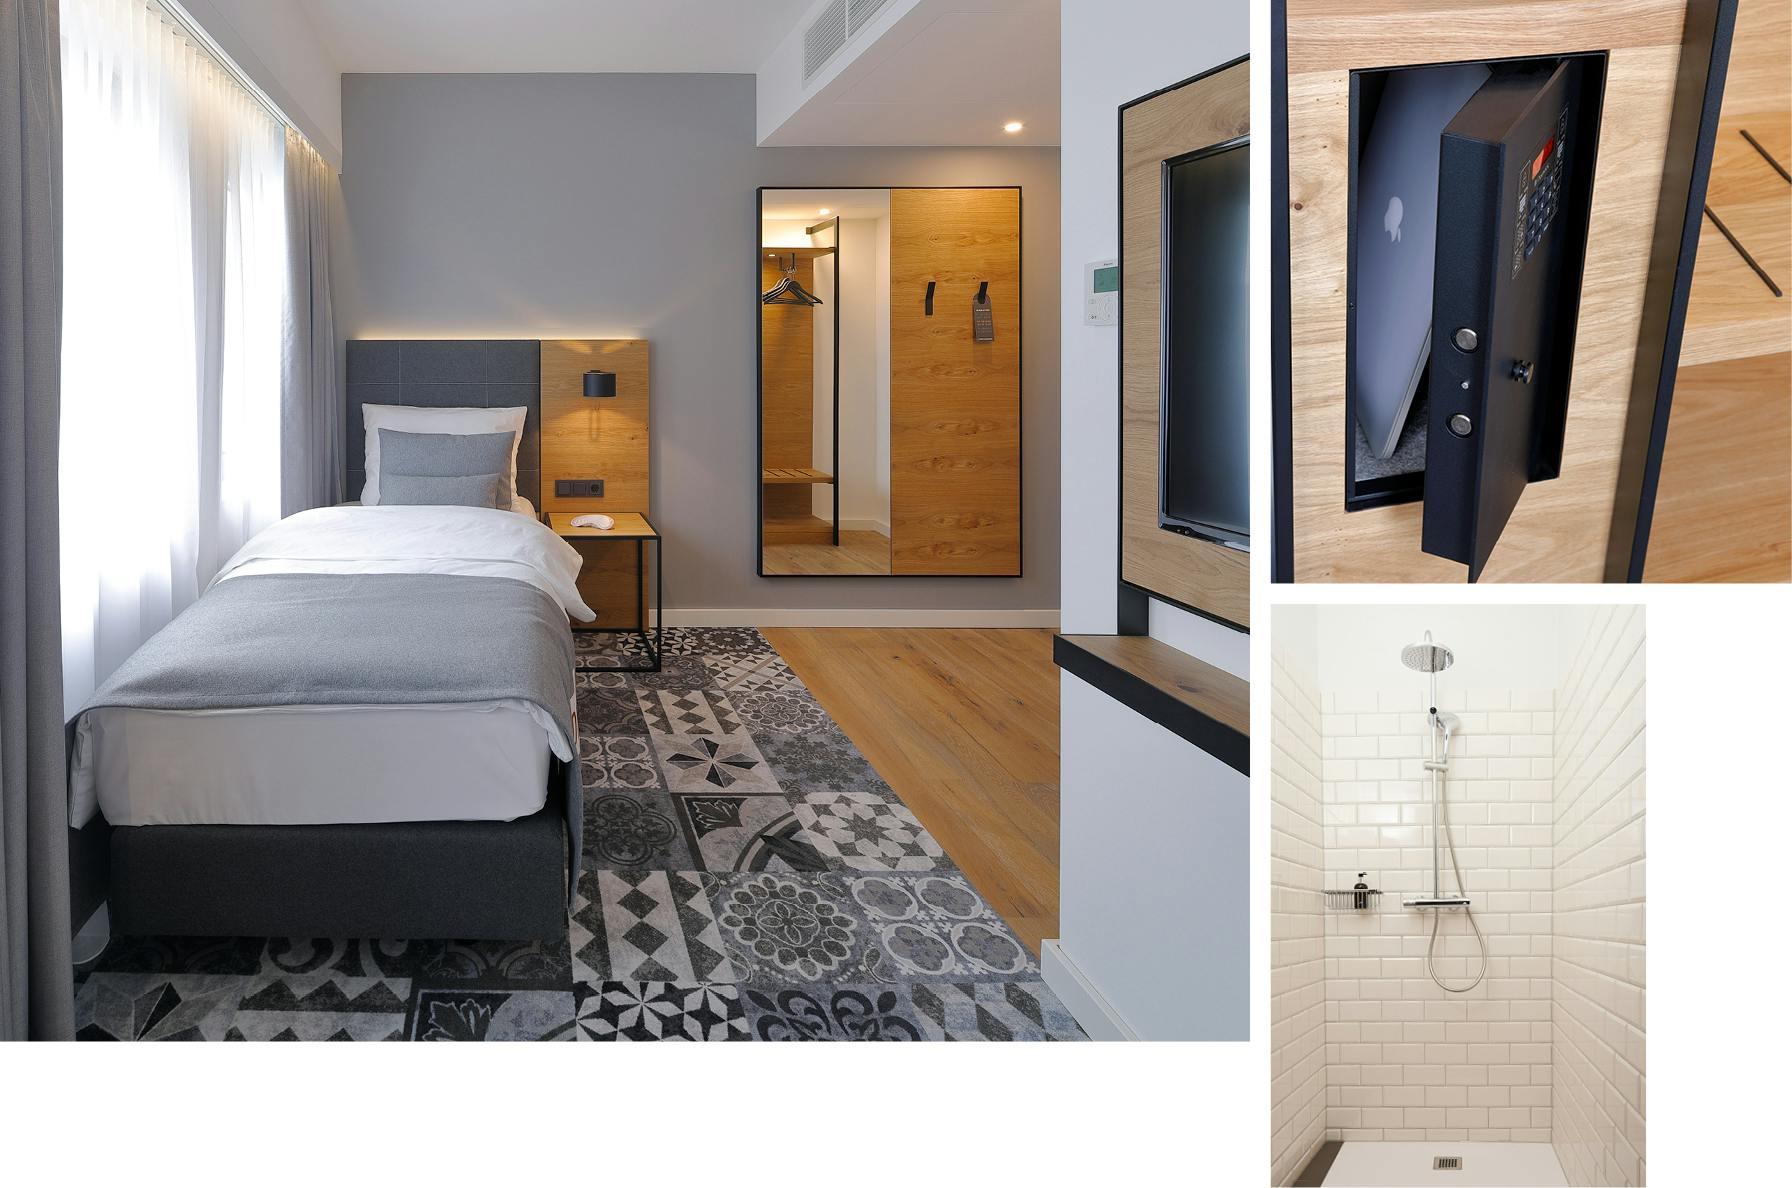 Collage mit Bildern aus dem Einzelzimmer: Bett, Dusche und Safe